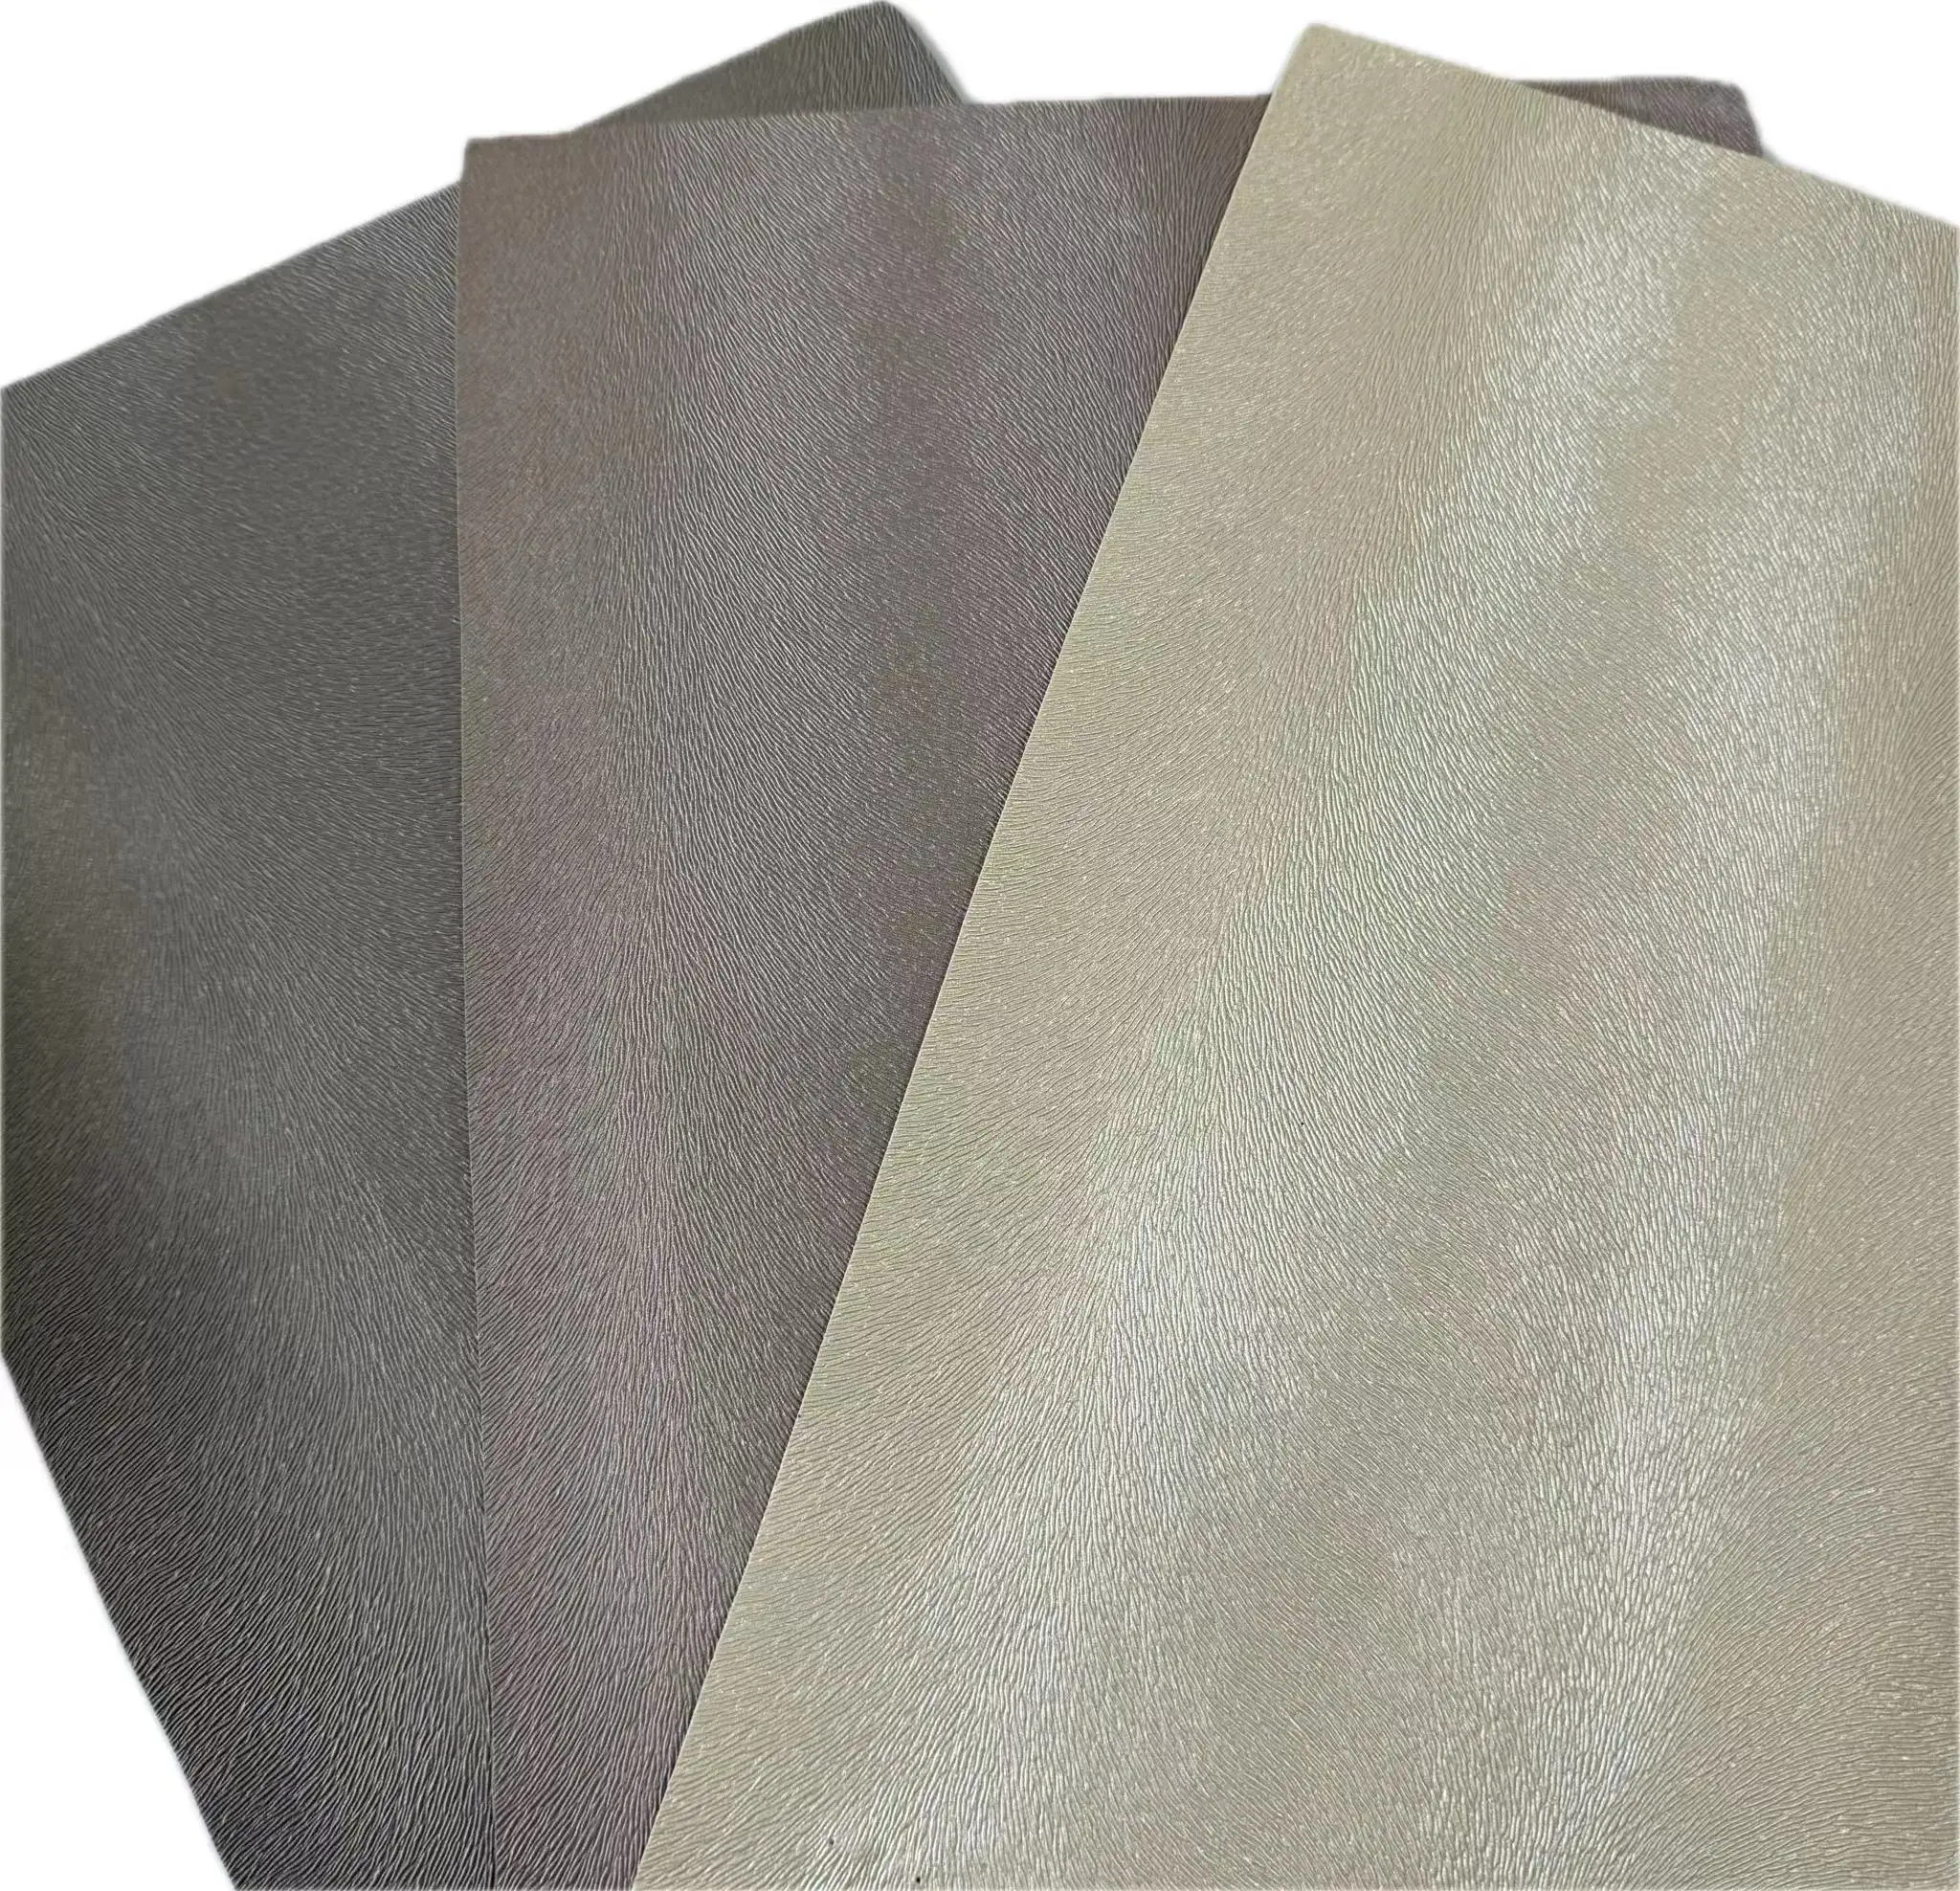 Tissu en cuir pvc vinyle résistant aux rayures fabricant de cuir synthétique cuir pvc pour housse de siège de décoration